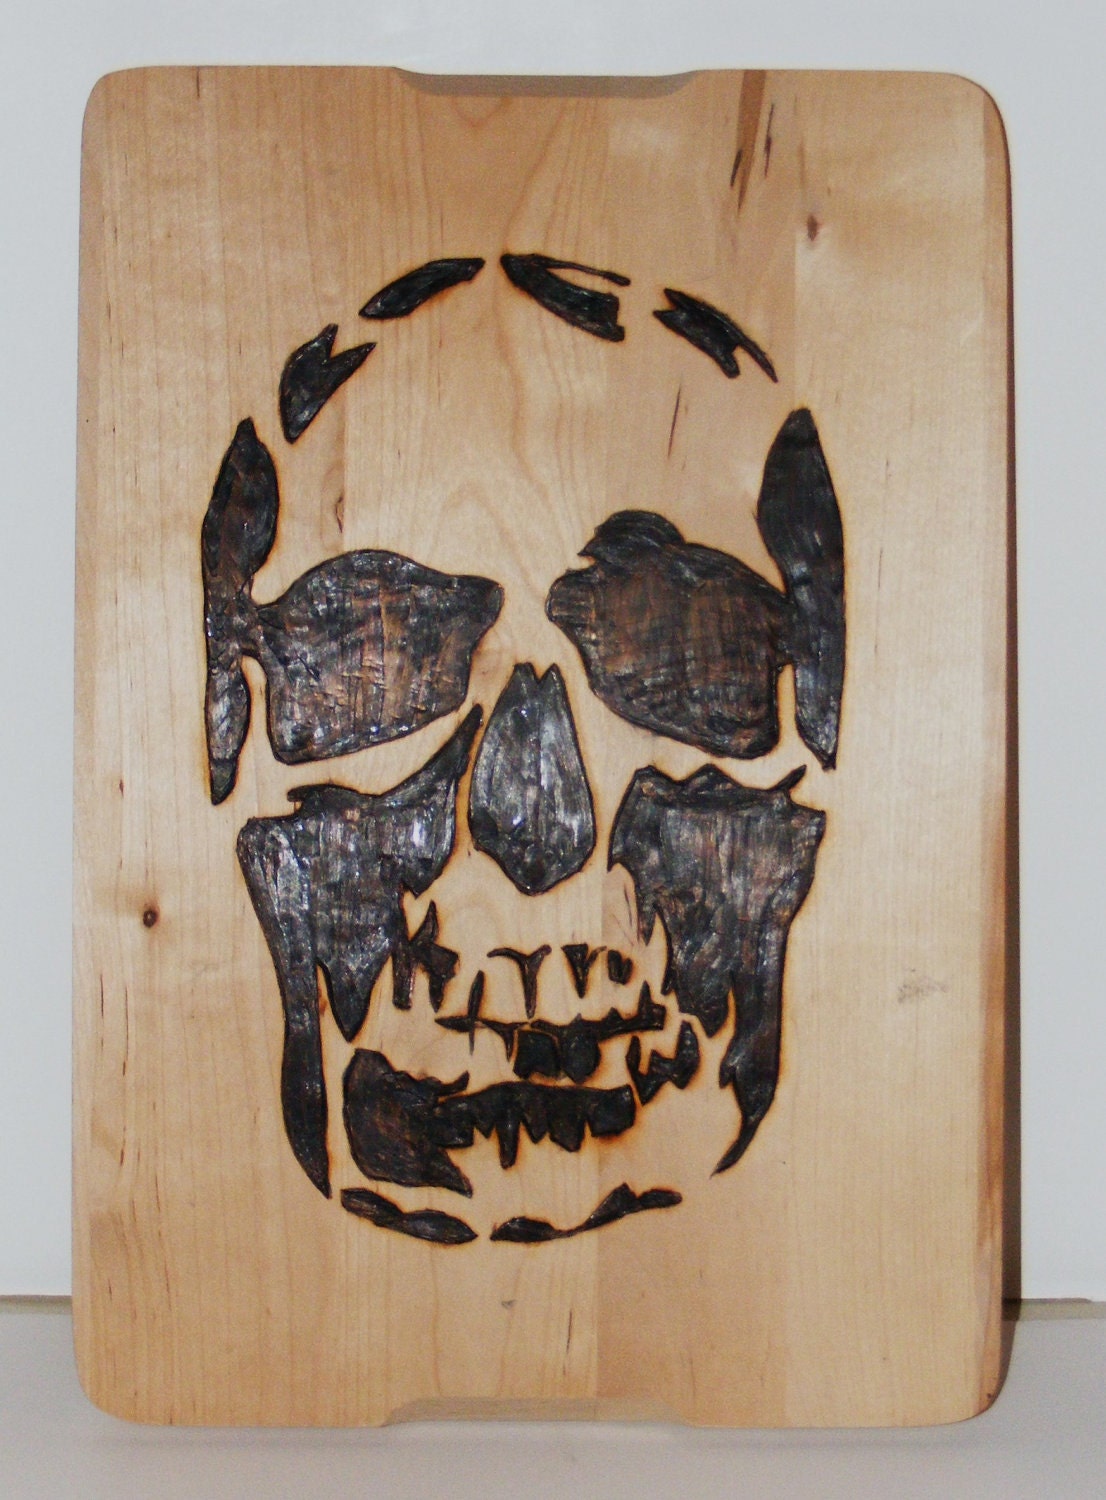 Skull Cutting Board Wood Burning Pyrography